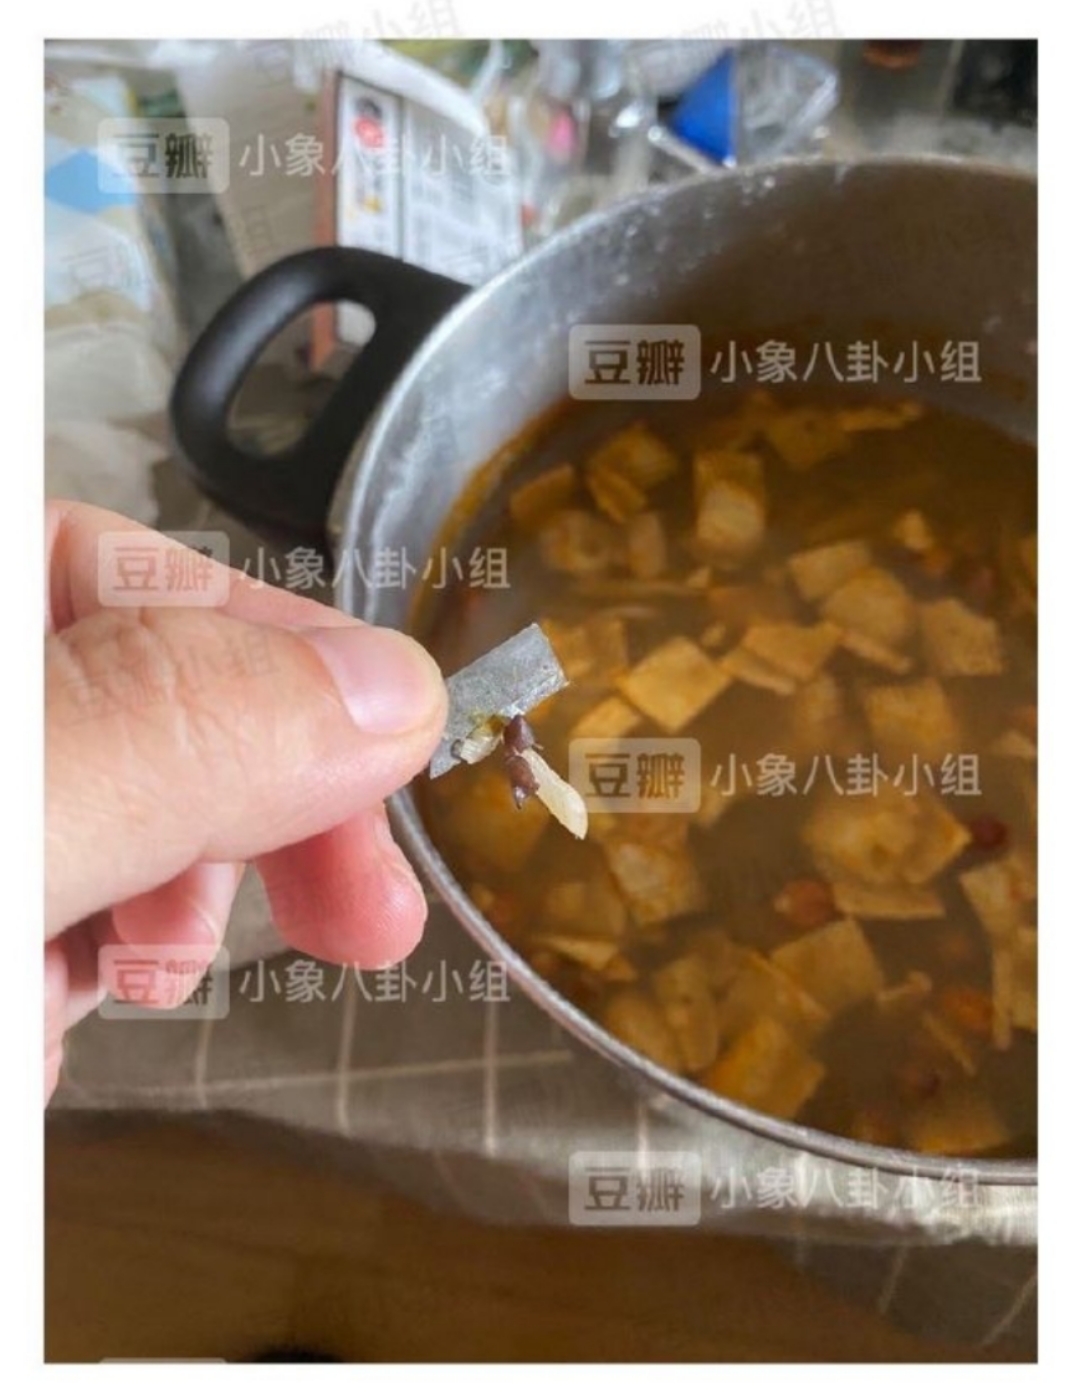 网曝食客吃李子柒螺蛳粉“吃出刀片” 店铺客服：一直在核实